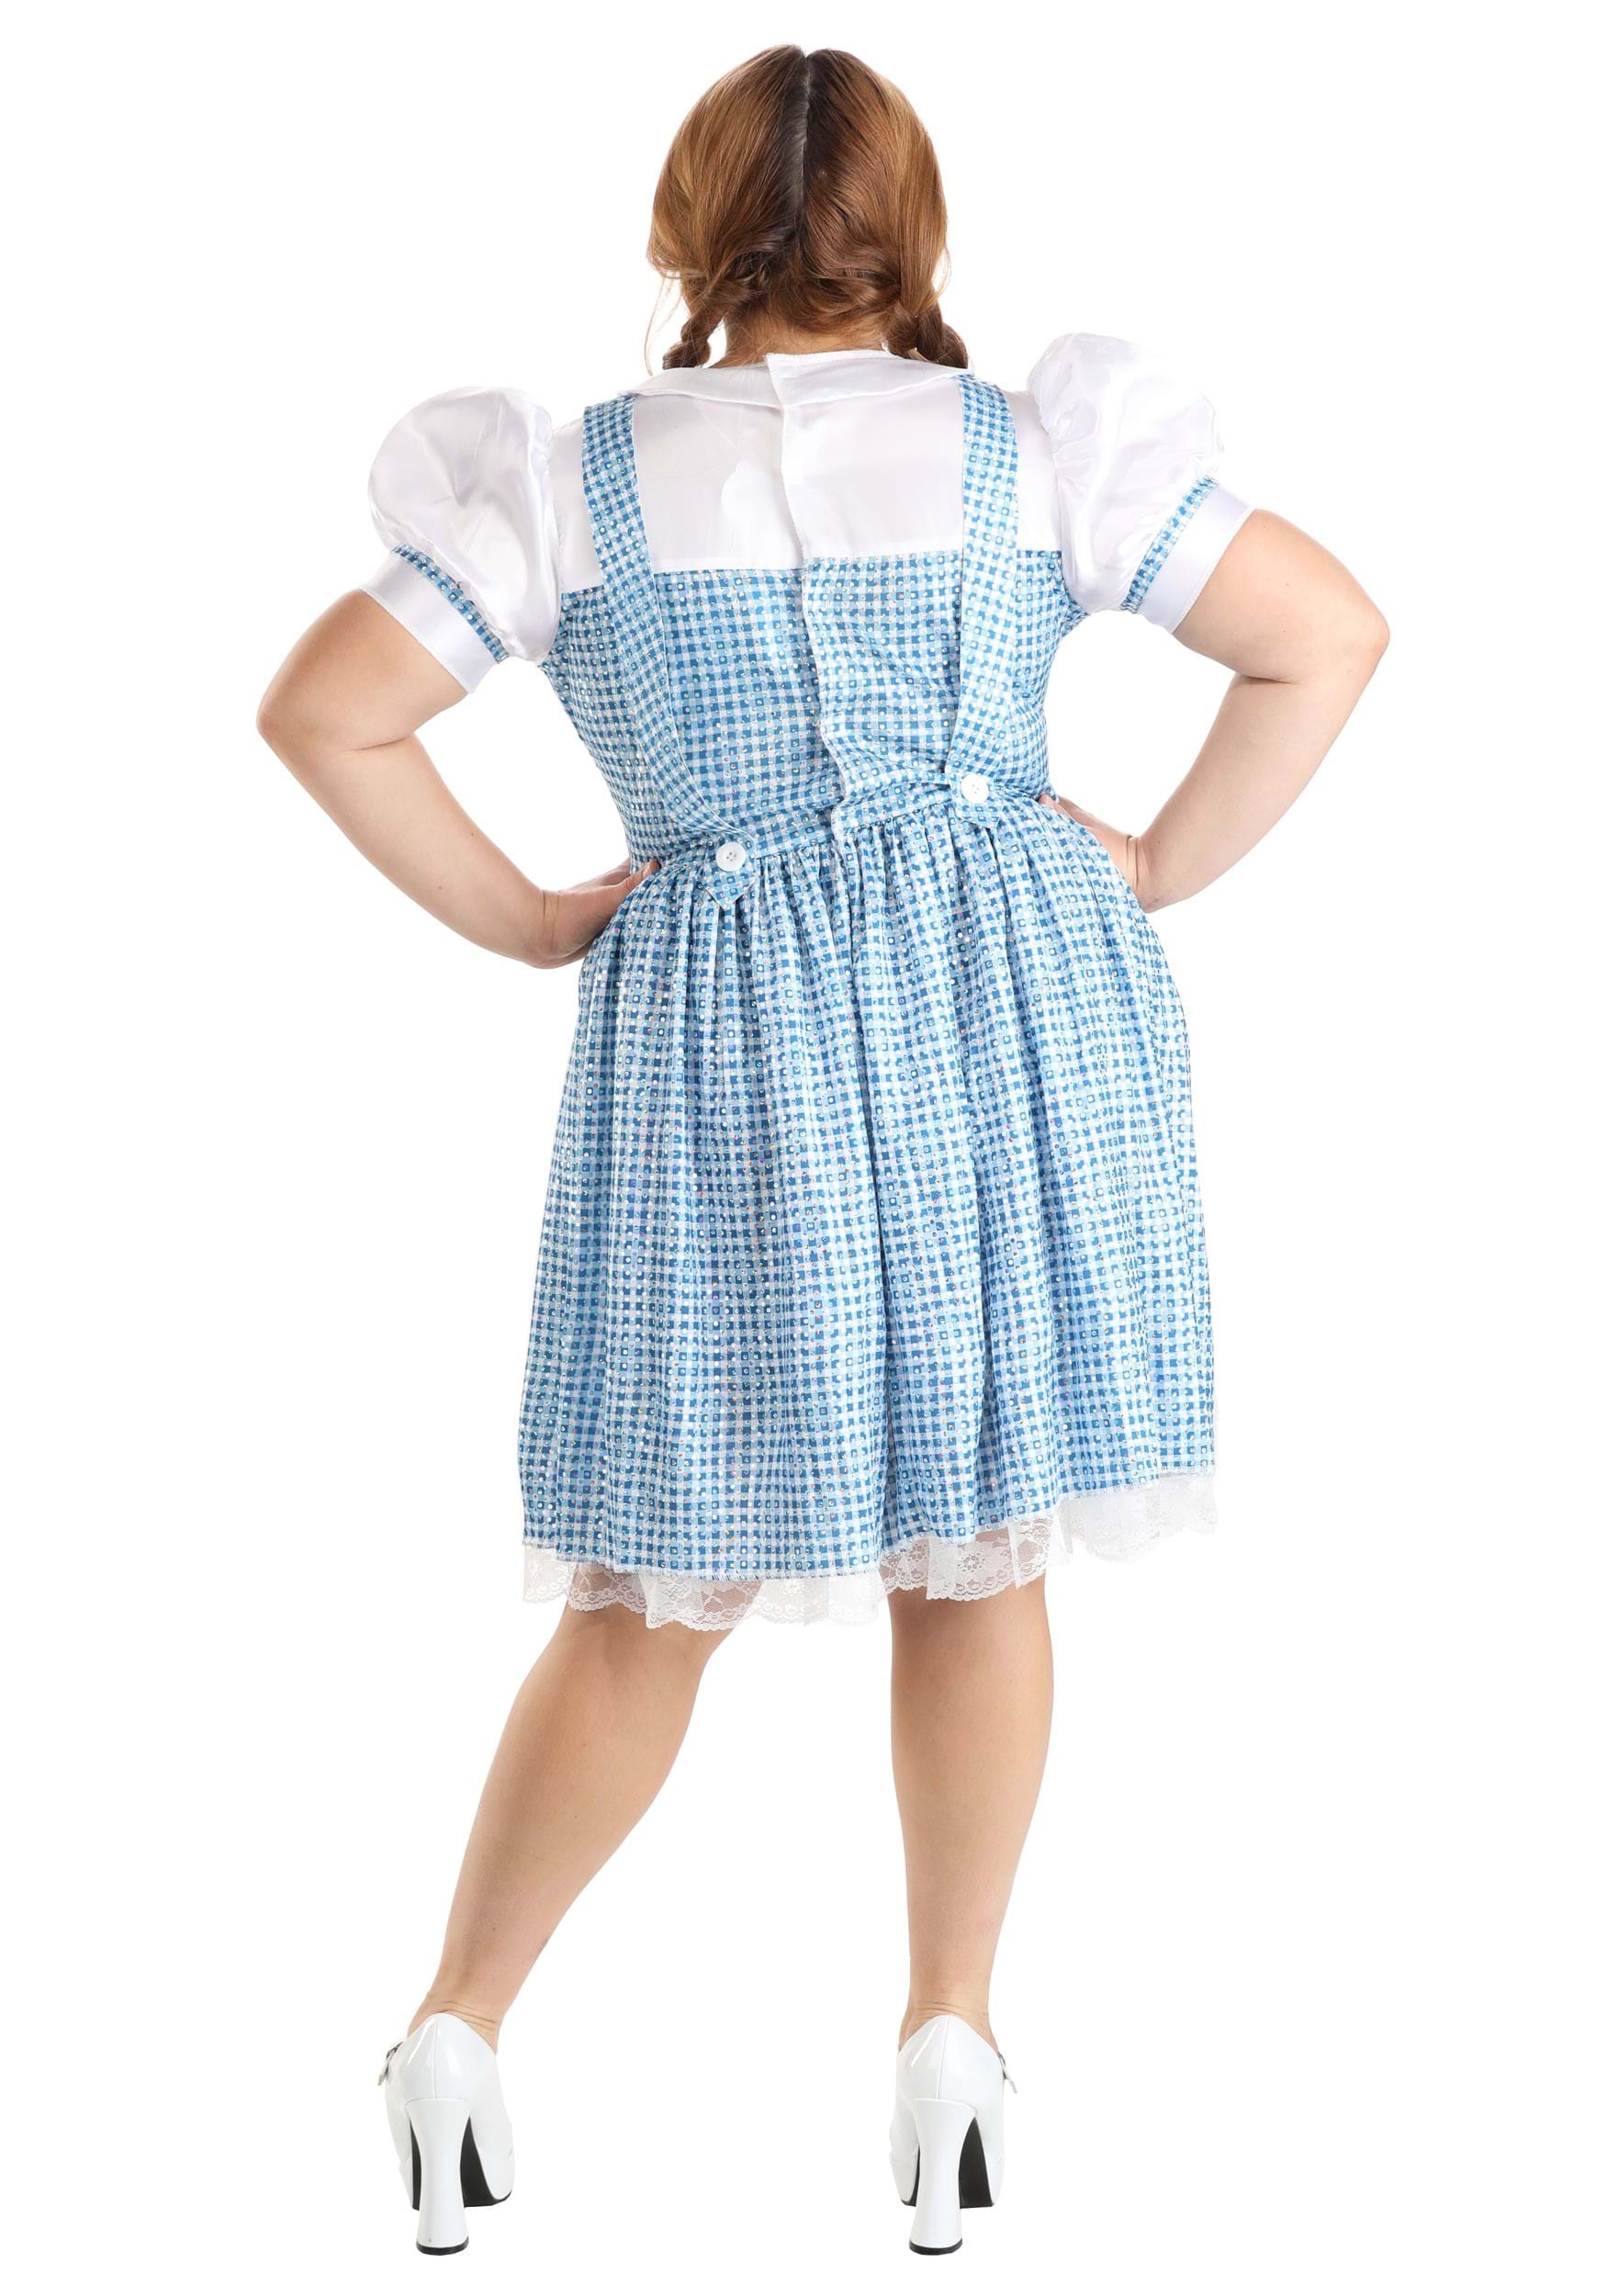 Farm Girl Costume For Women , Dorothy Costumes